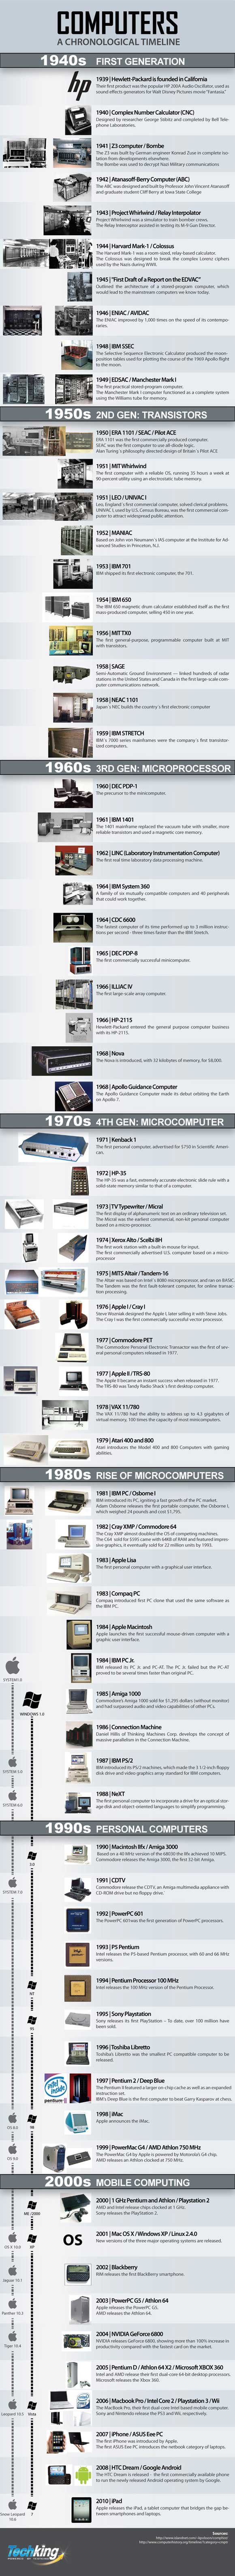 Инфографика развития компьютеров с 1939 по 2010 год